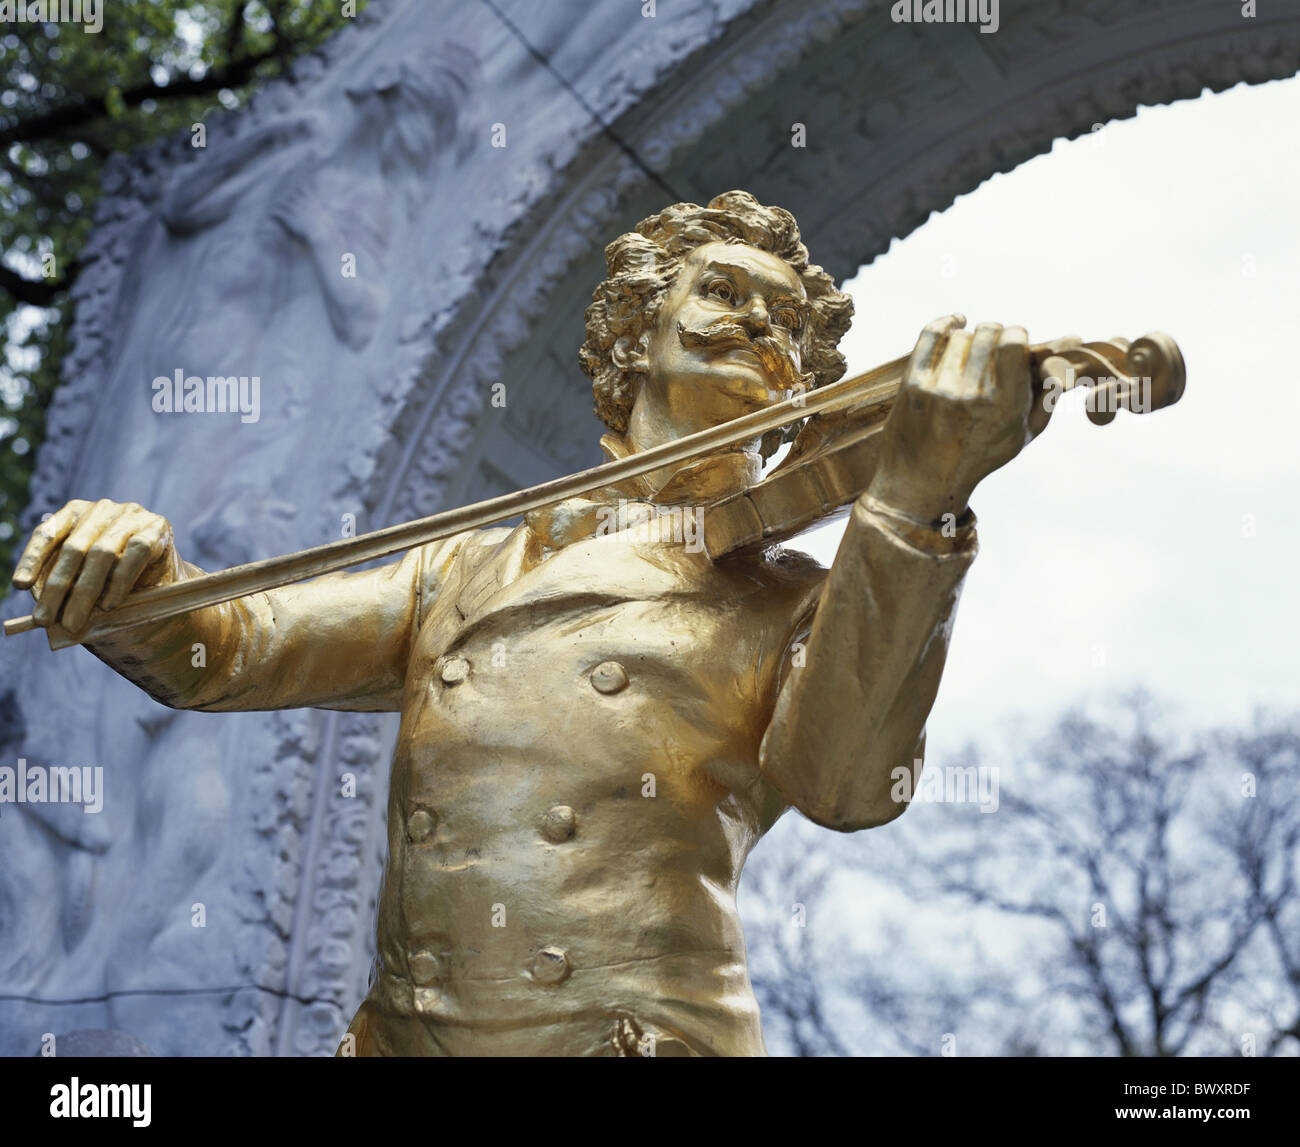 Johann Strauss monumento dorado el compositor de música clásica Austria Europa escultura al parque de la ciudad histórica Viena Foto de stock